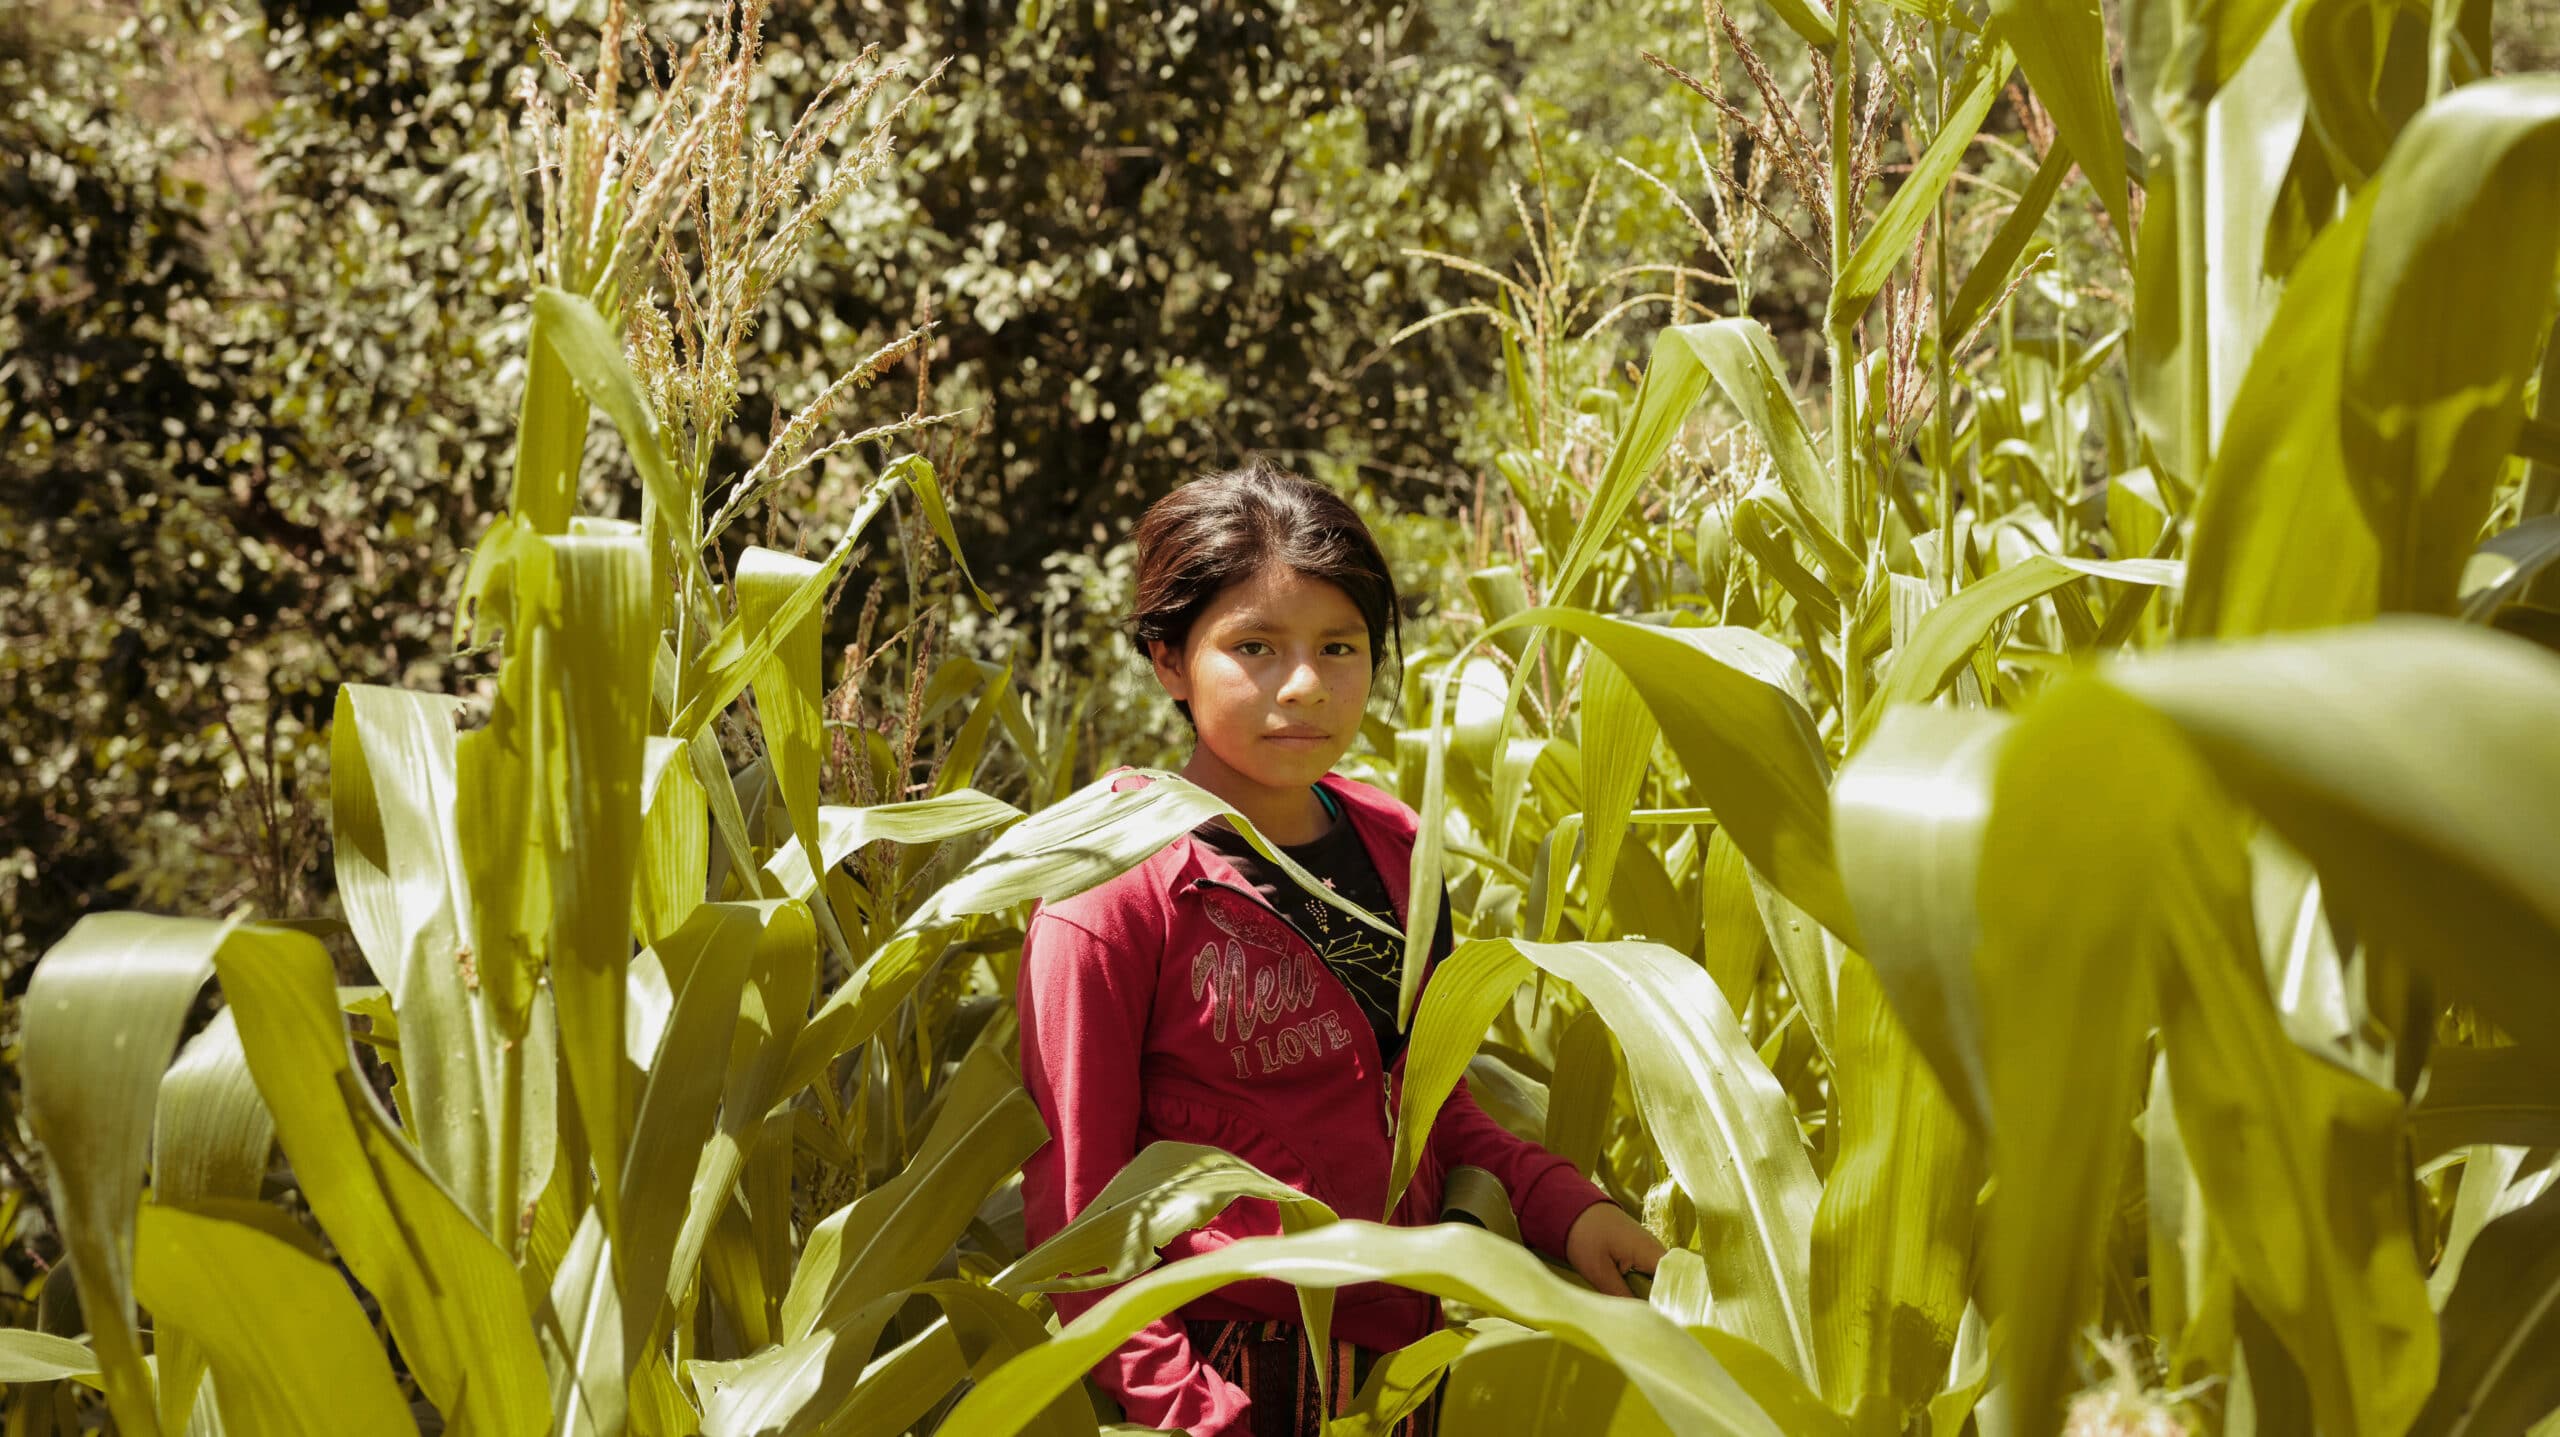 Ei jente med rød jakke står midt i en høy maisåker og ser mot kamera, i Guatemala